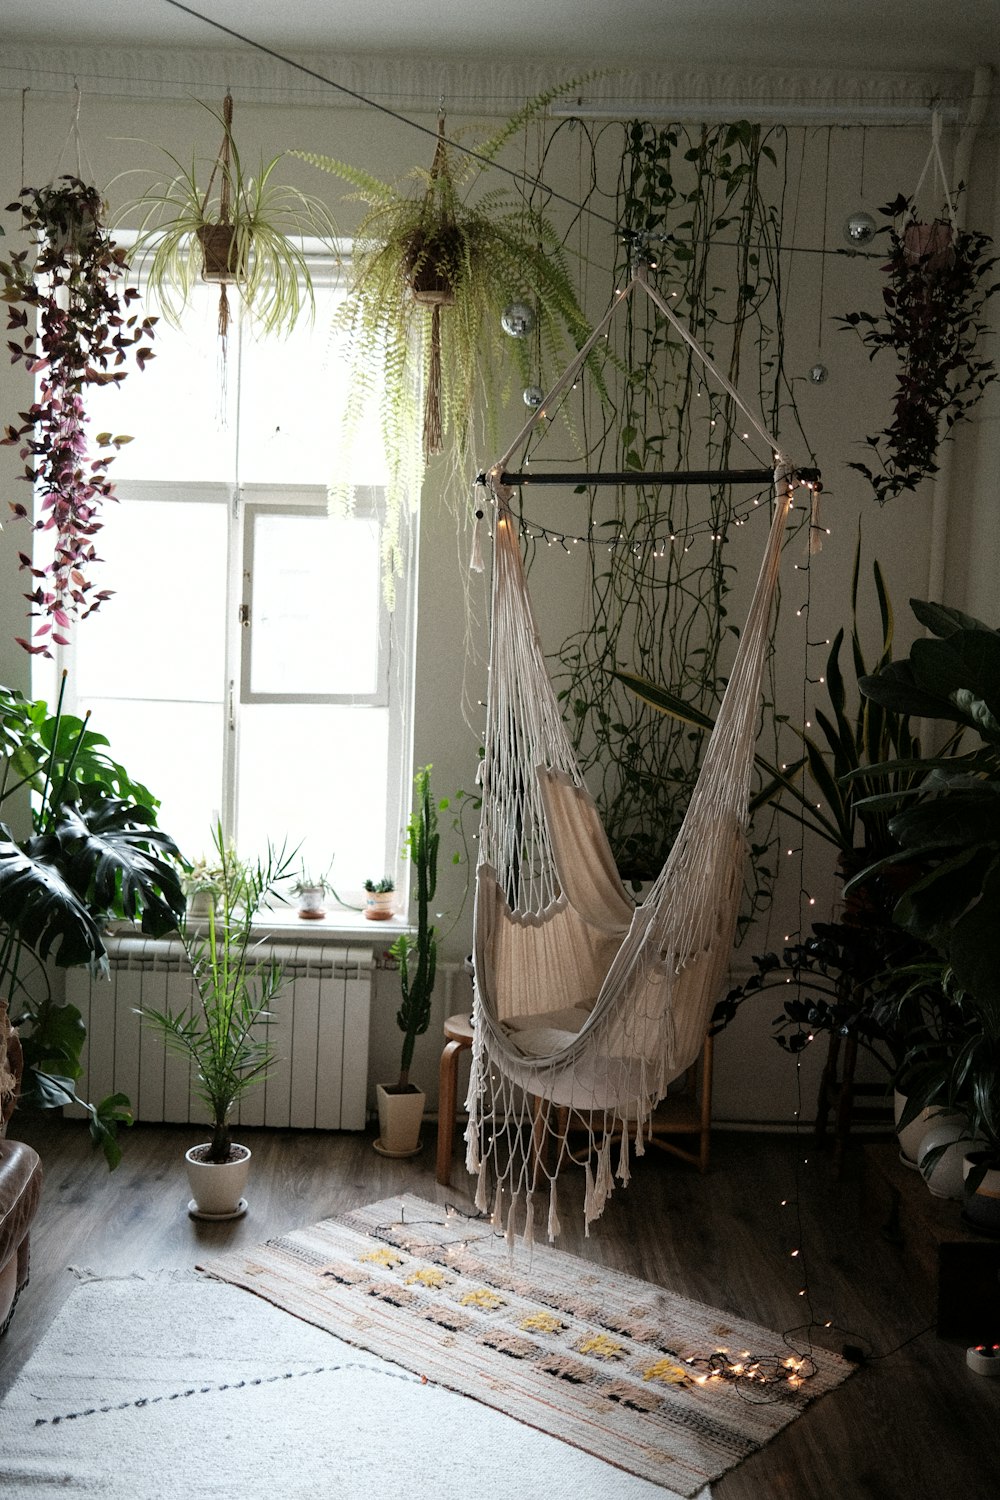 Un esqueleto de una cuerda en una habitación con plantas